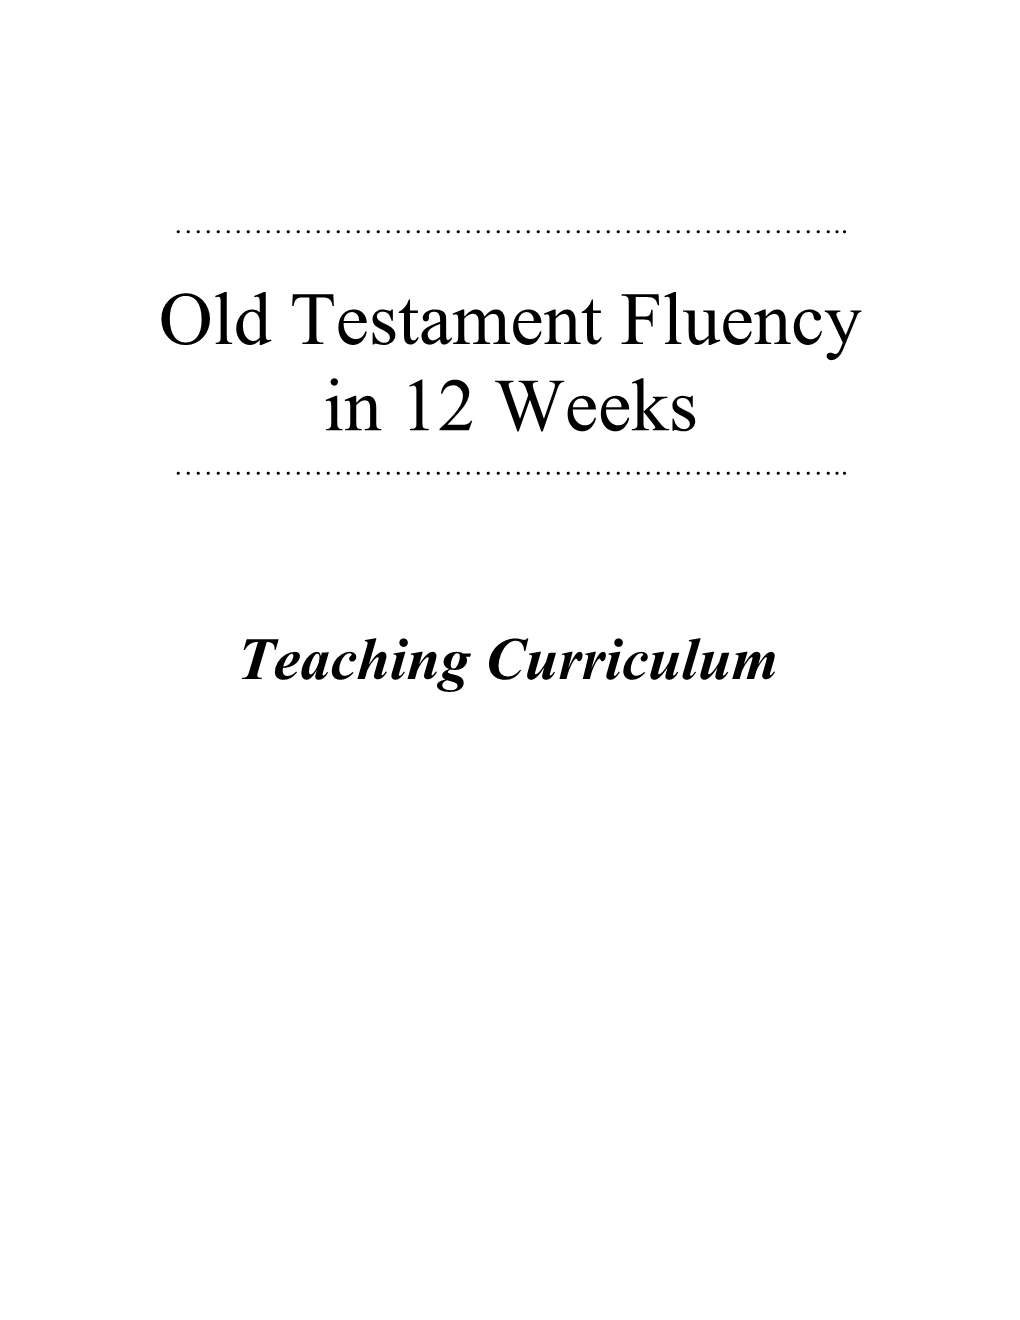 Old Testament Fluency in 12 Weeks